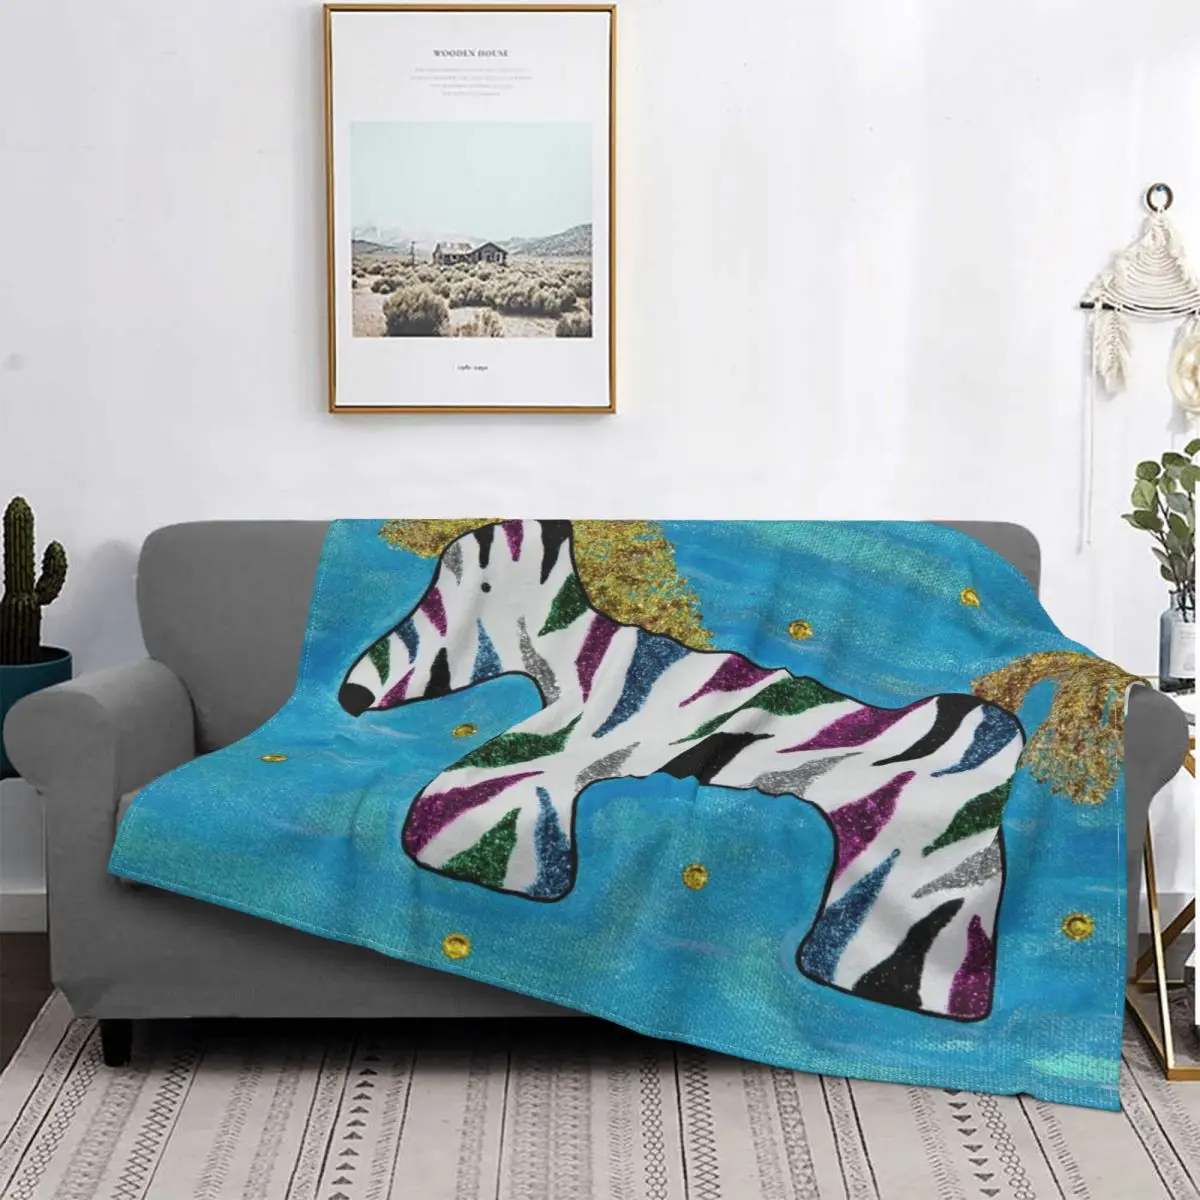 

Цветное одеяло «Зебра» из кораллового флиса, плюшевое одеяло с принтом животных, милое многофункциональное теплое покрывало для кровати, д...